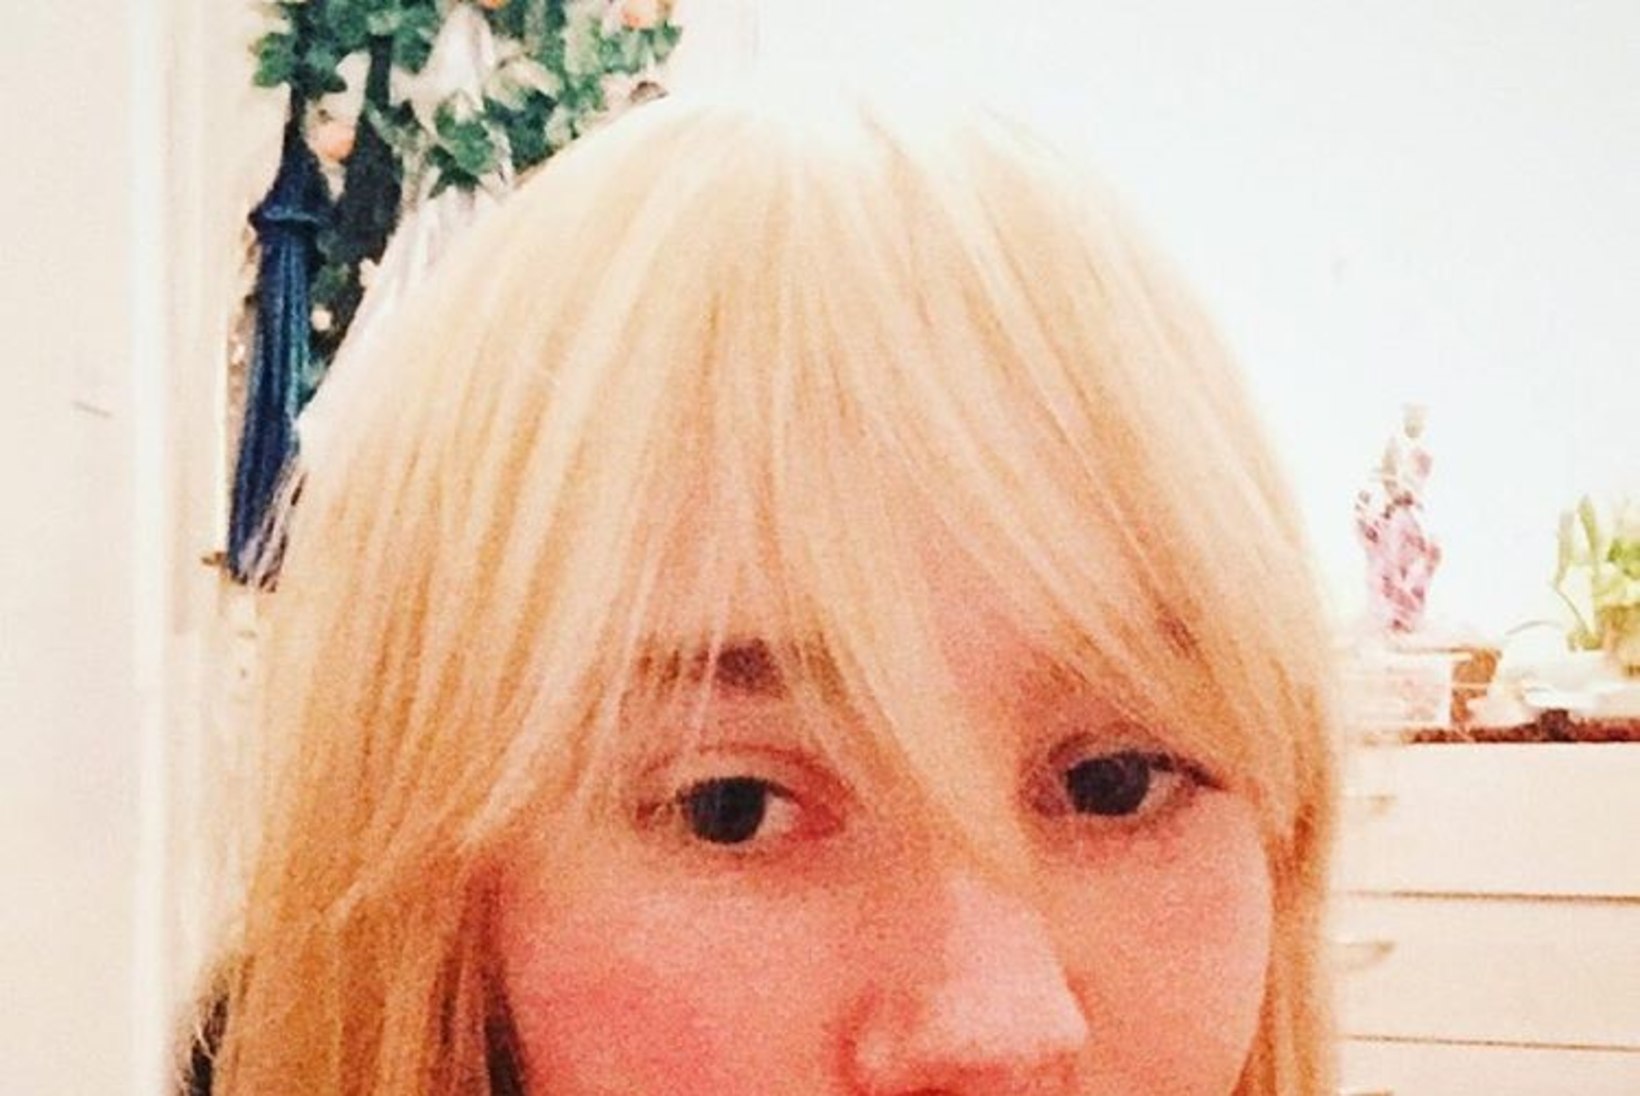 FOTOD | TÄIELIK STIILMUUTUS: Iiris Vesik värvis juuksed blondiks... ning siis lillaks!